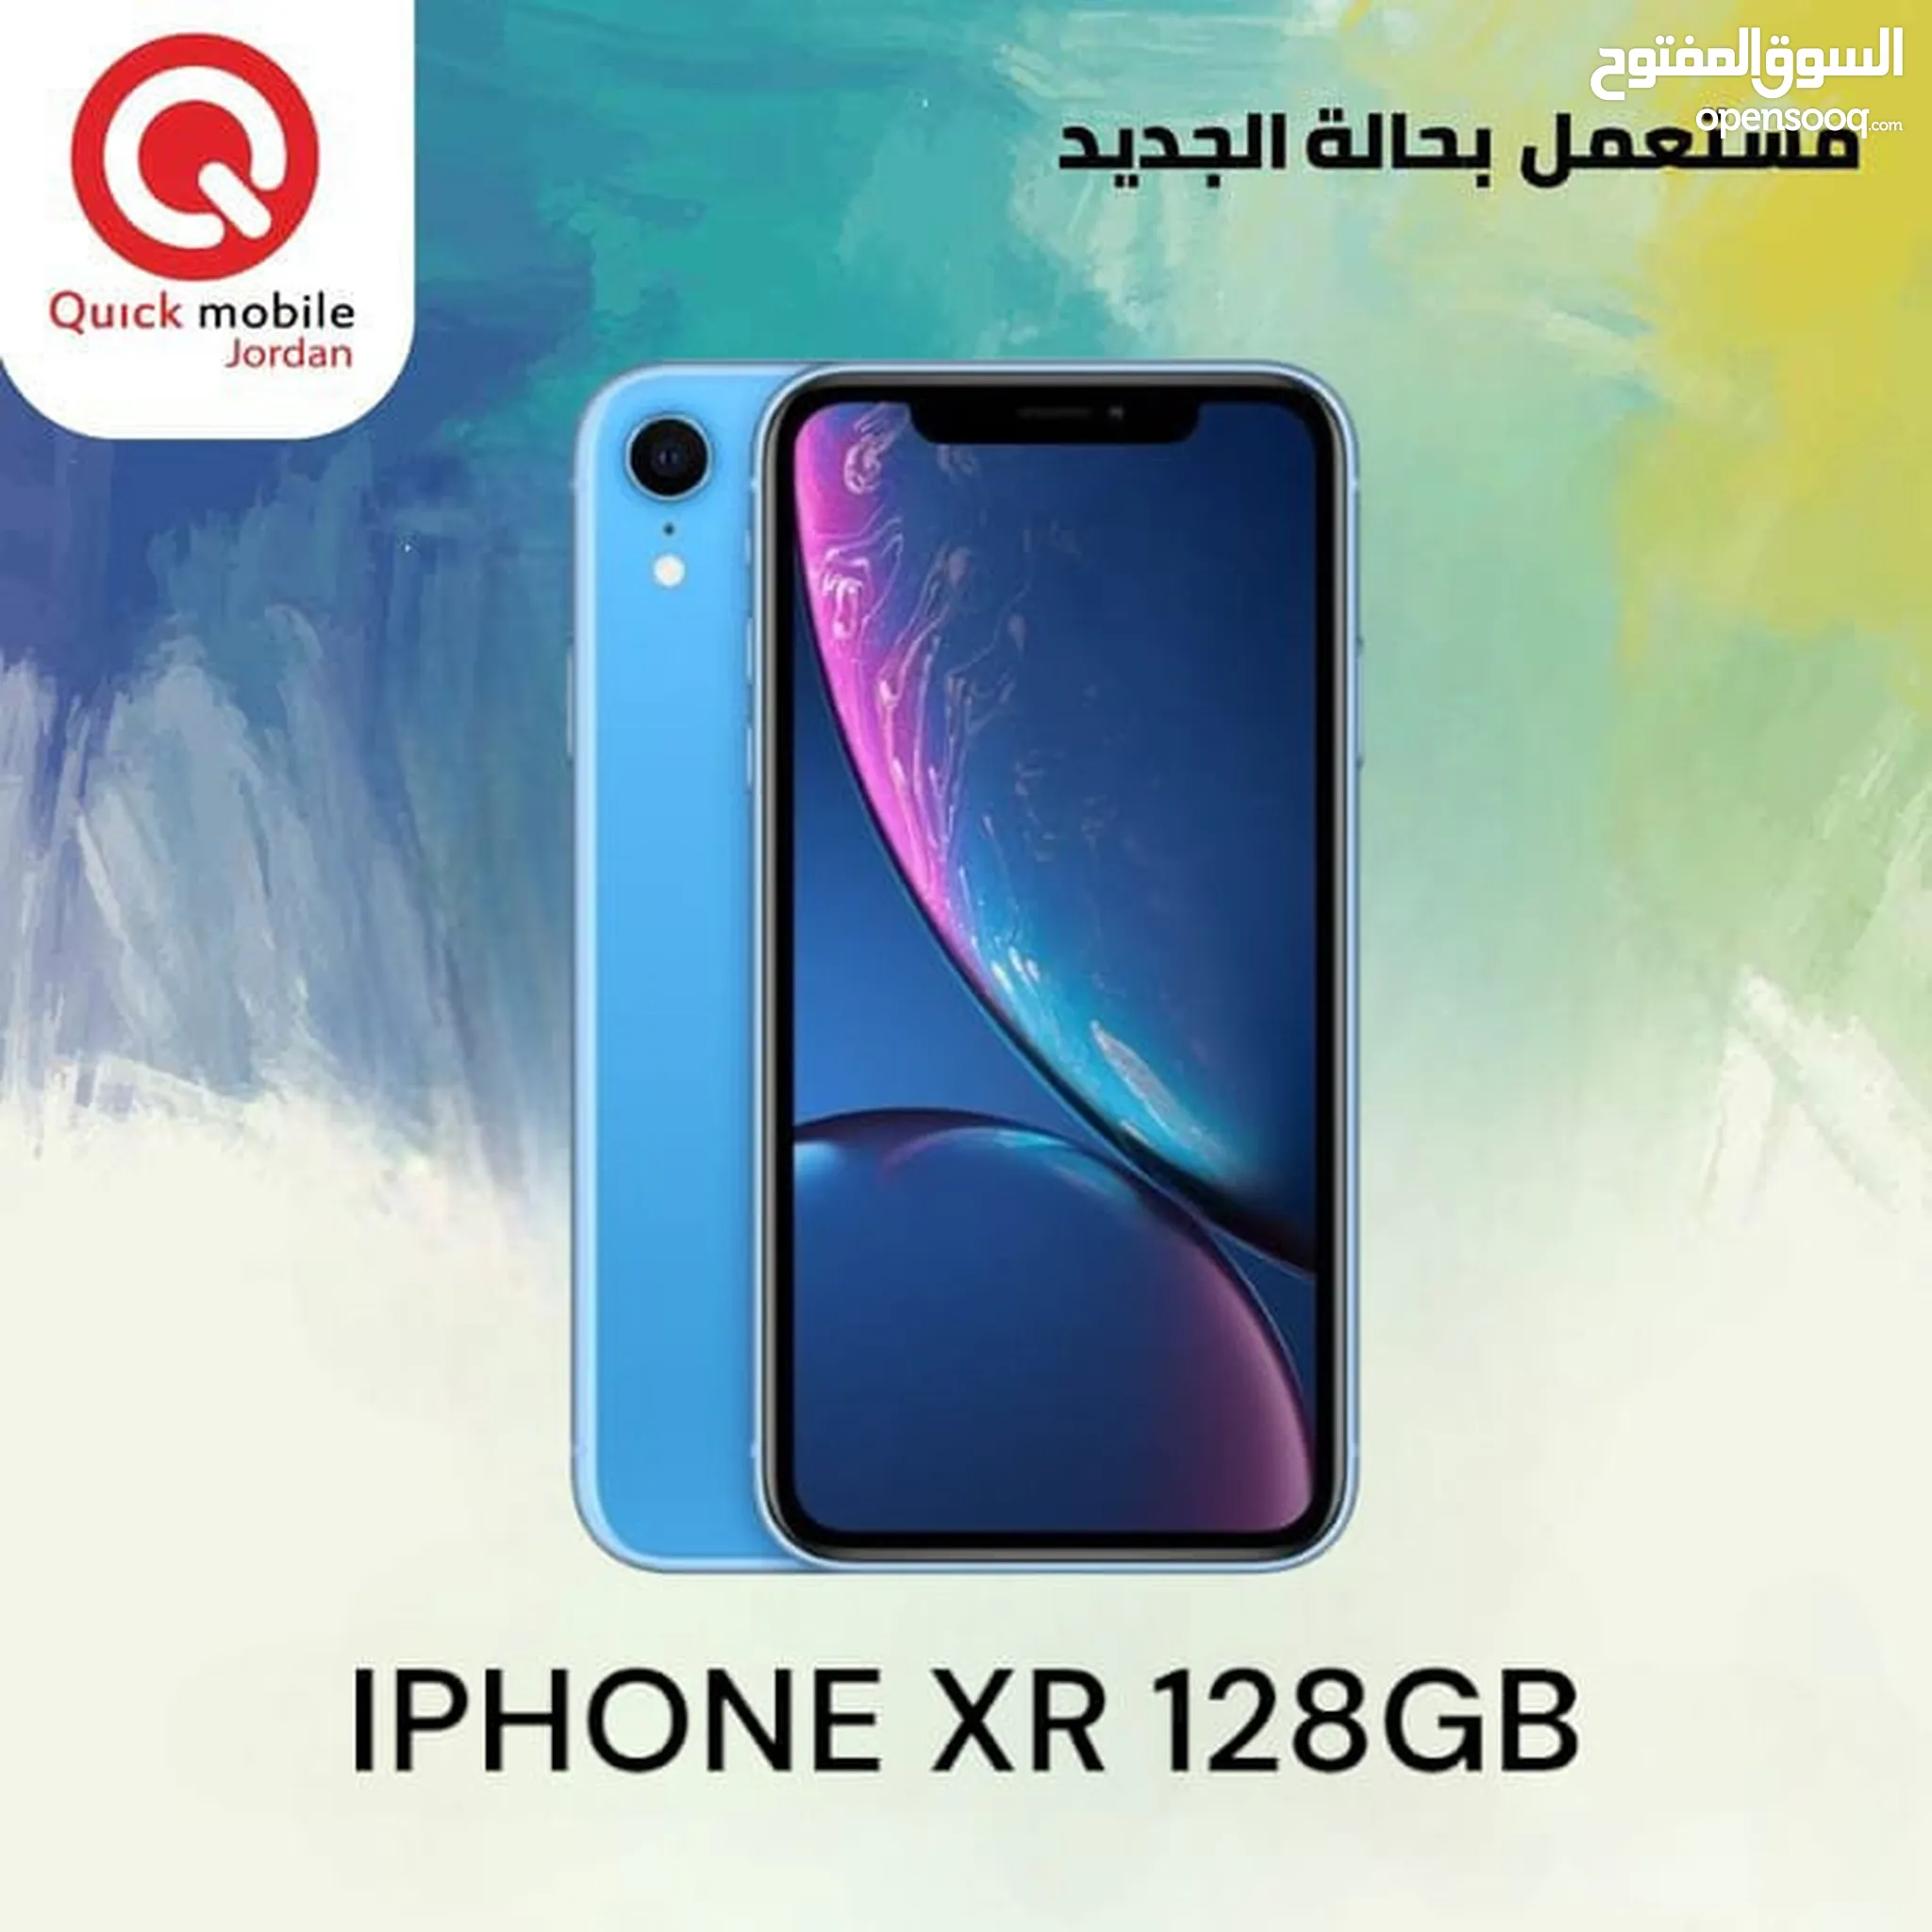 ايفون XR - ايفون اكس ار للبيع : 128 جيجا, 256, 64 : أرخص سعر في عمان |  السوق المفتوح